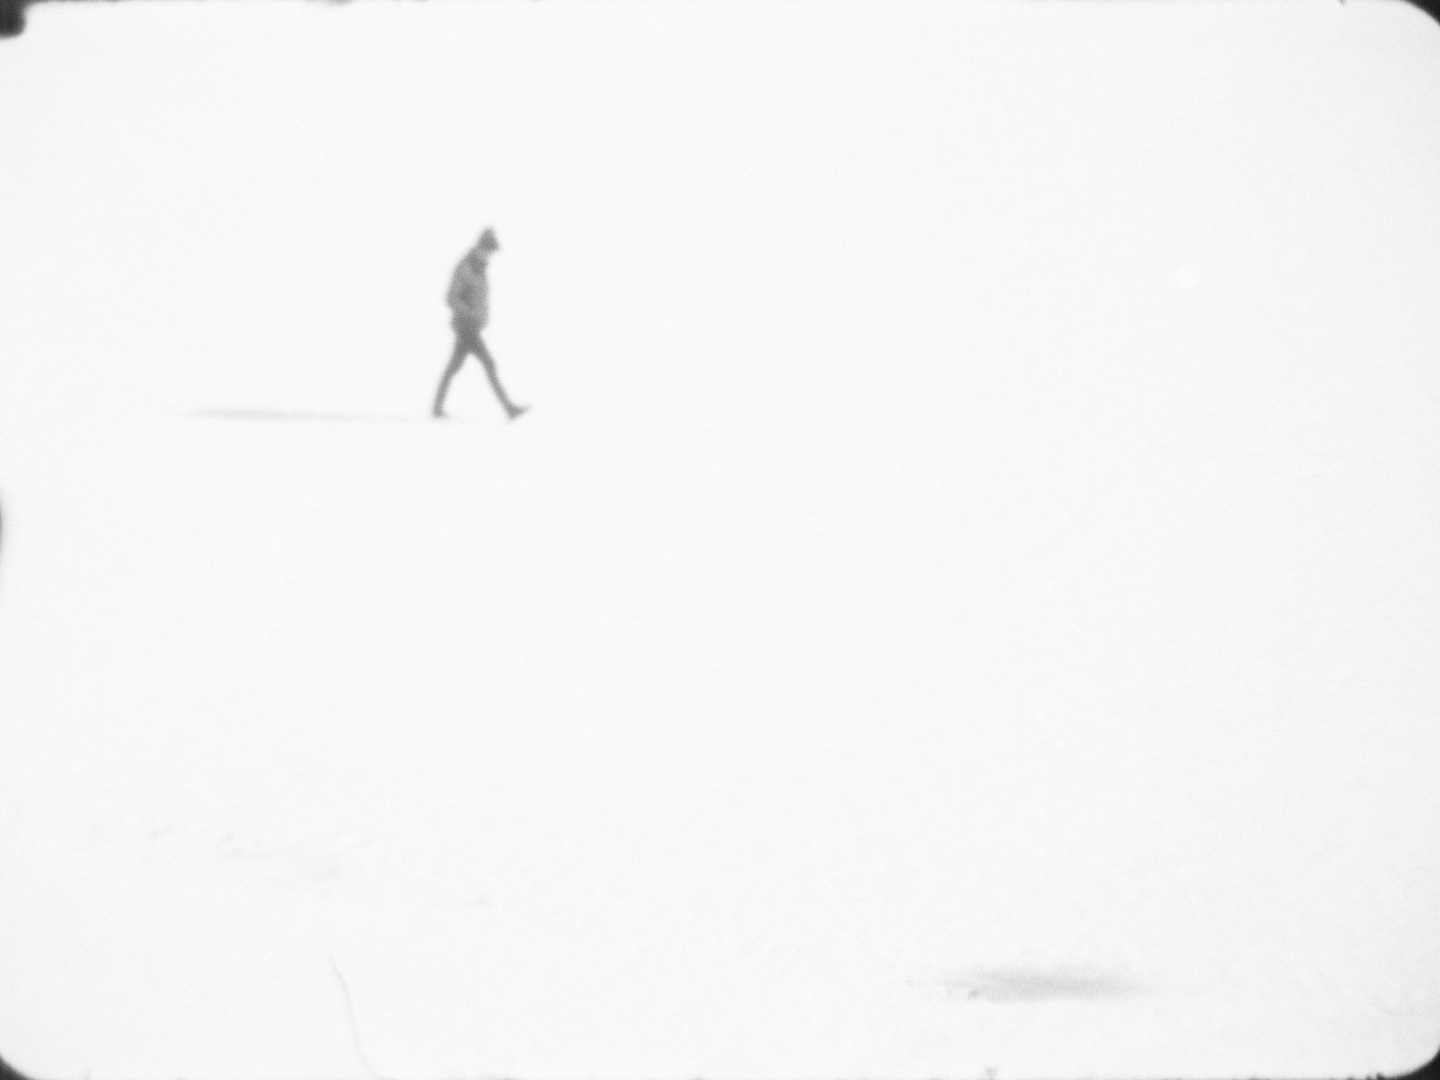 Man walking across snowy field.